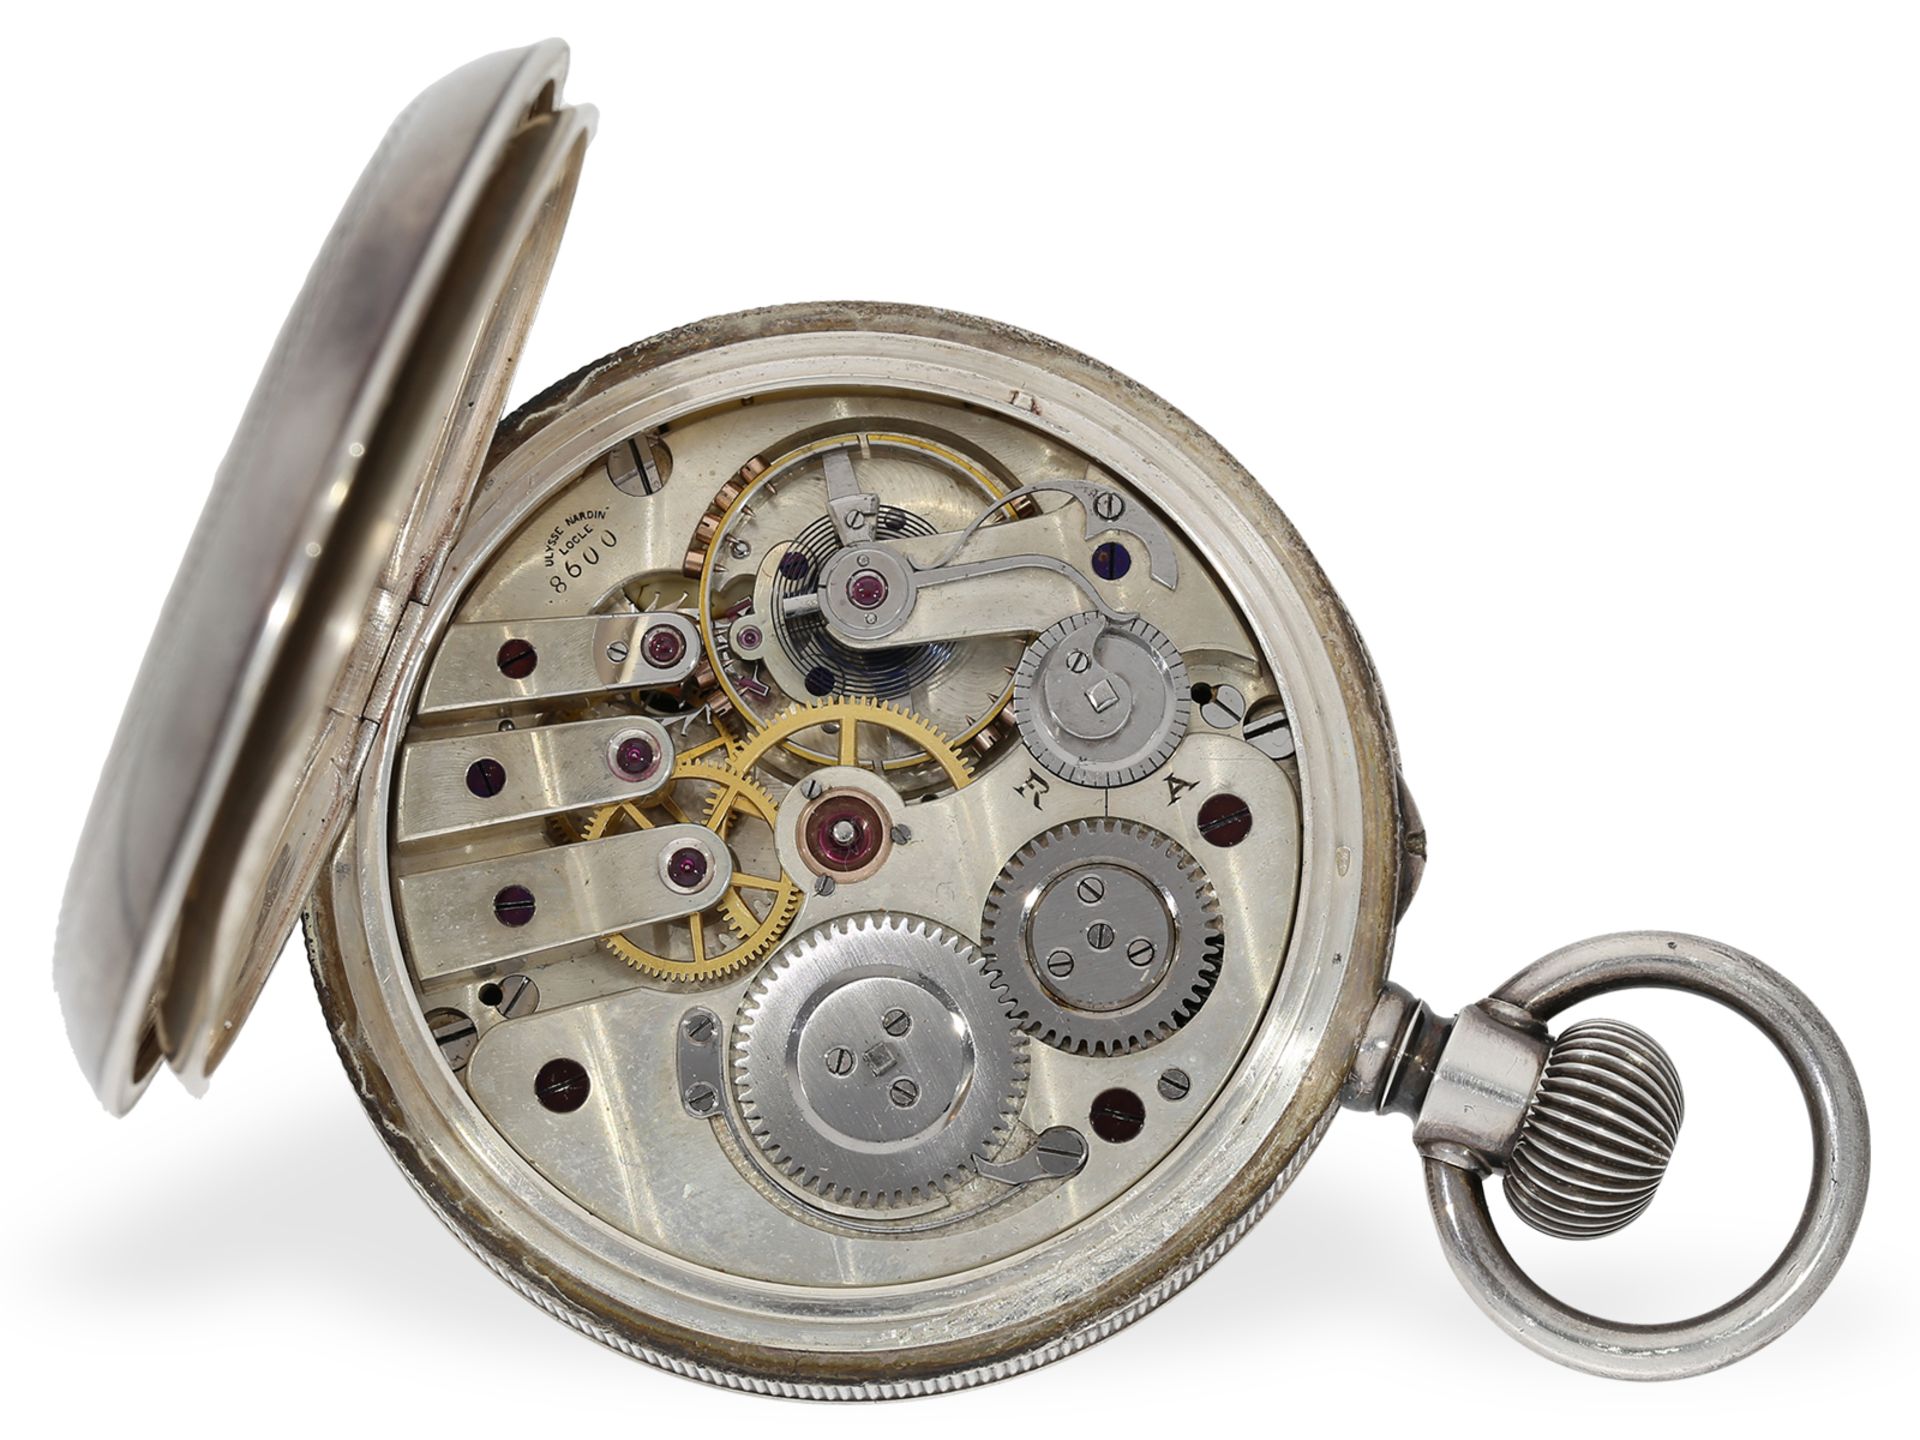 Taschenuhr: äußerst seltenes Ulysse Nardin Chronometer mit elektrischer Kontaktvorrichtung, ca.1880 - Bild 2 aus 5